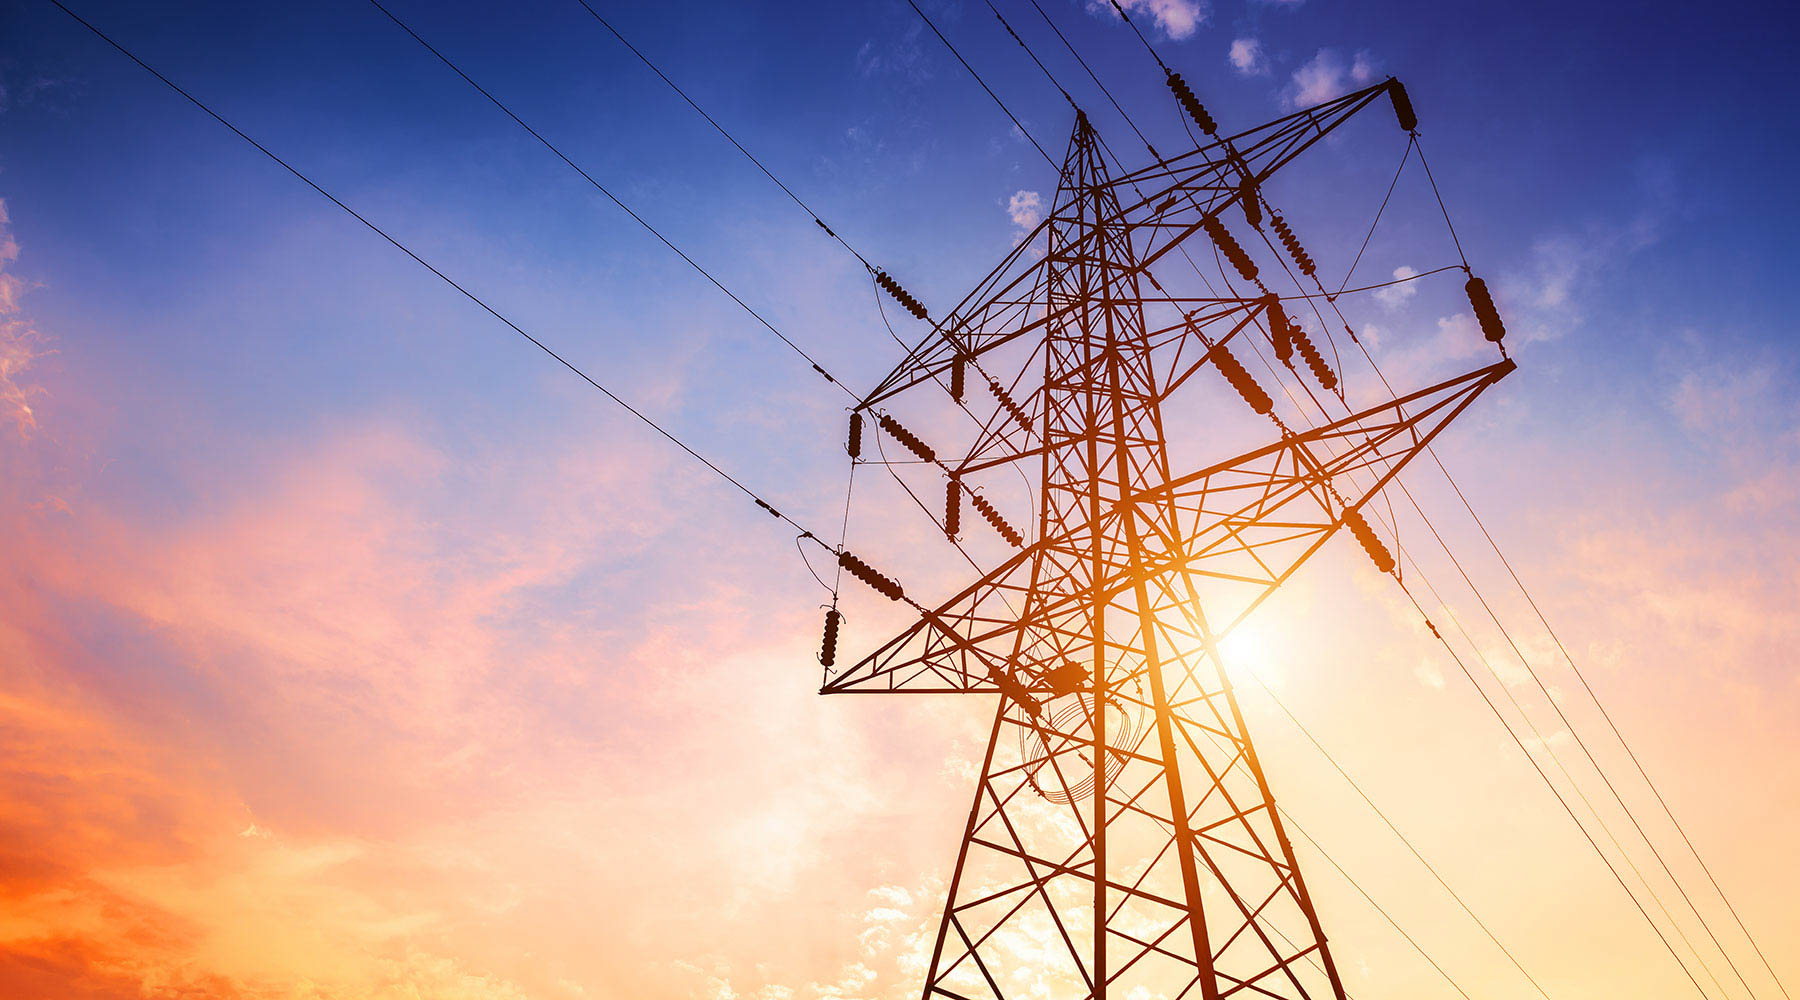 70% електромереж гірських регіонів області потребують заміни